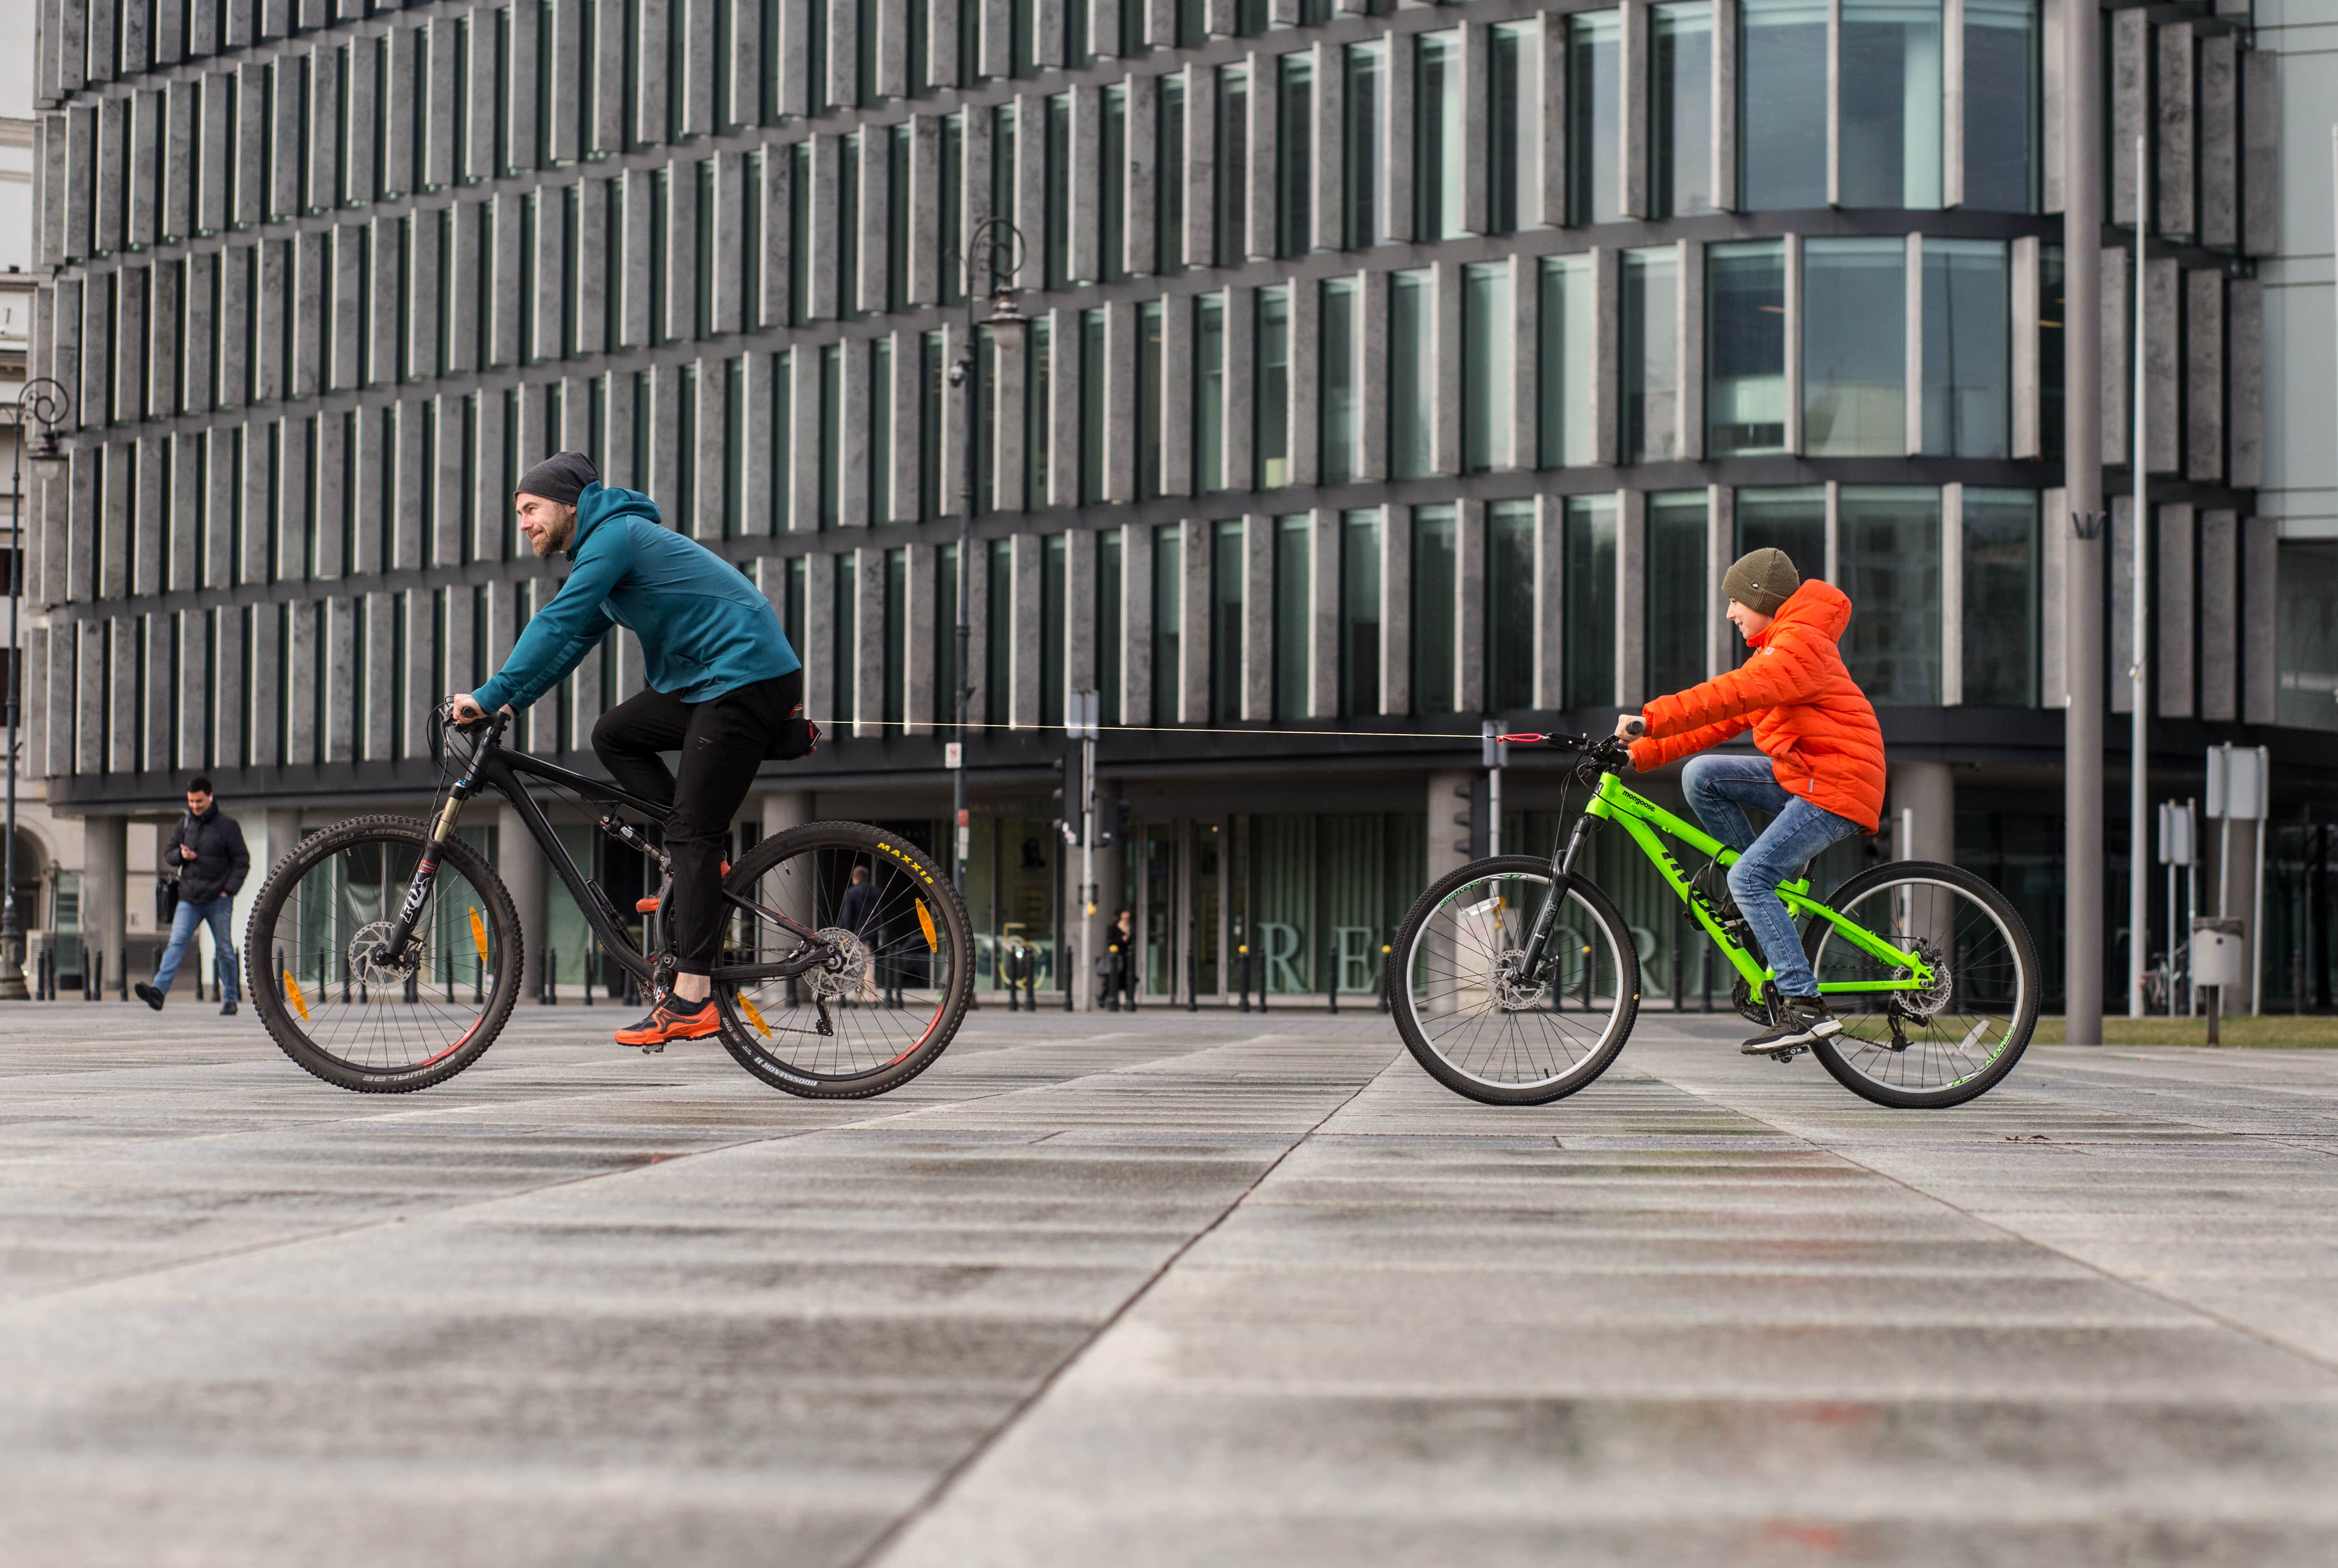 Rodzic i dziecko na rowerze Opatentowany holownik od 2Riders odmieni oblicze rodzinnych wycieczek